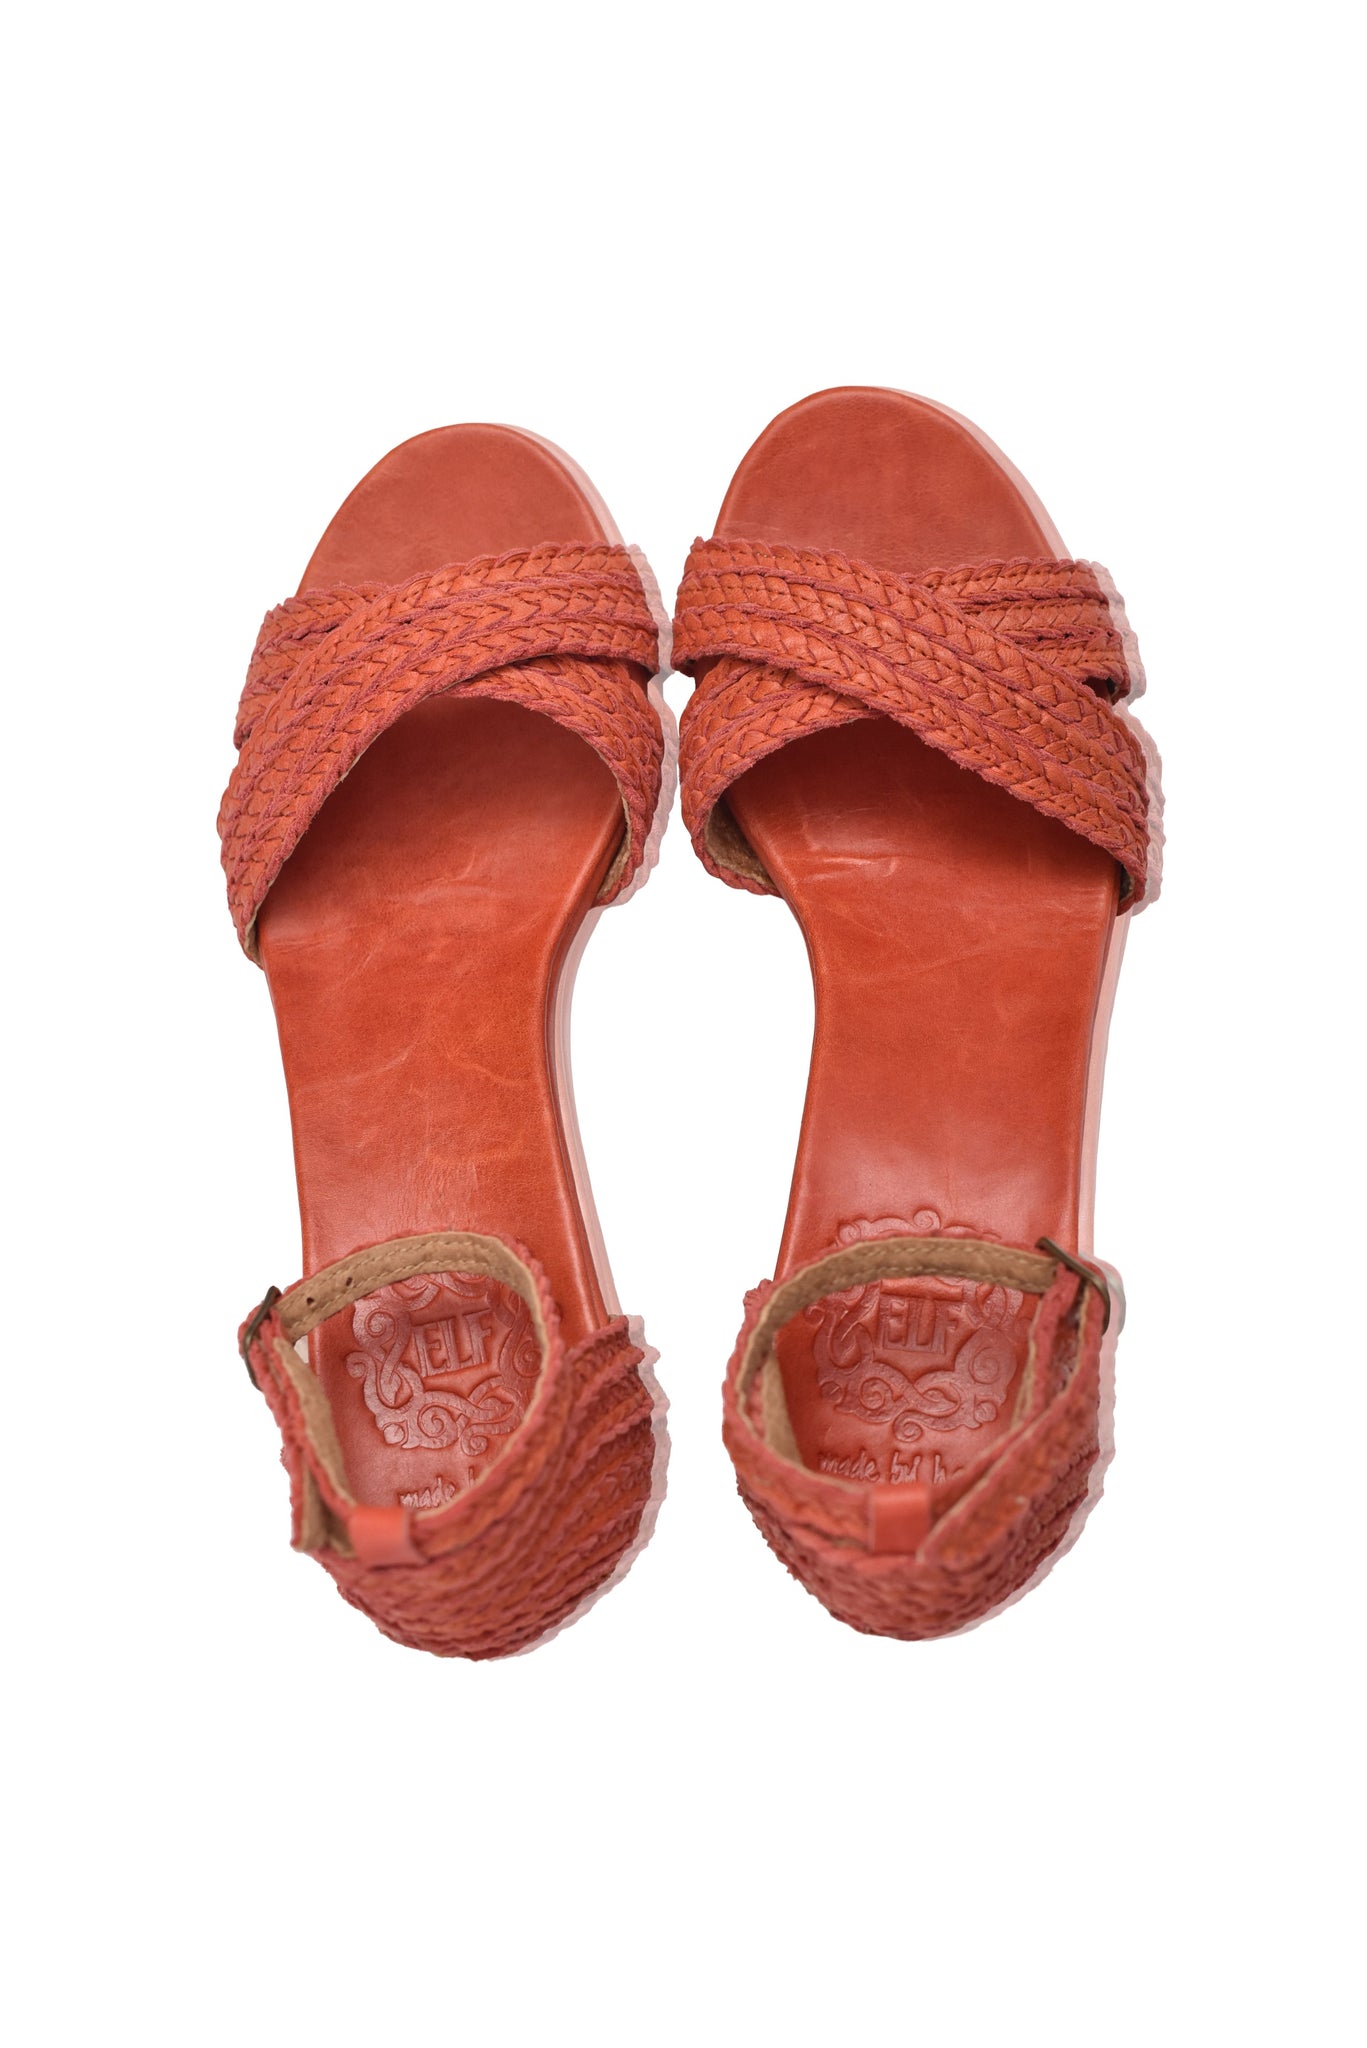 Bahamas Block Heel Sandals by ELF